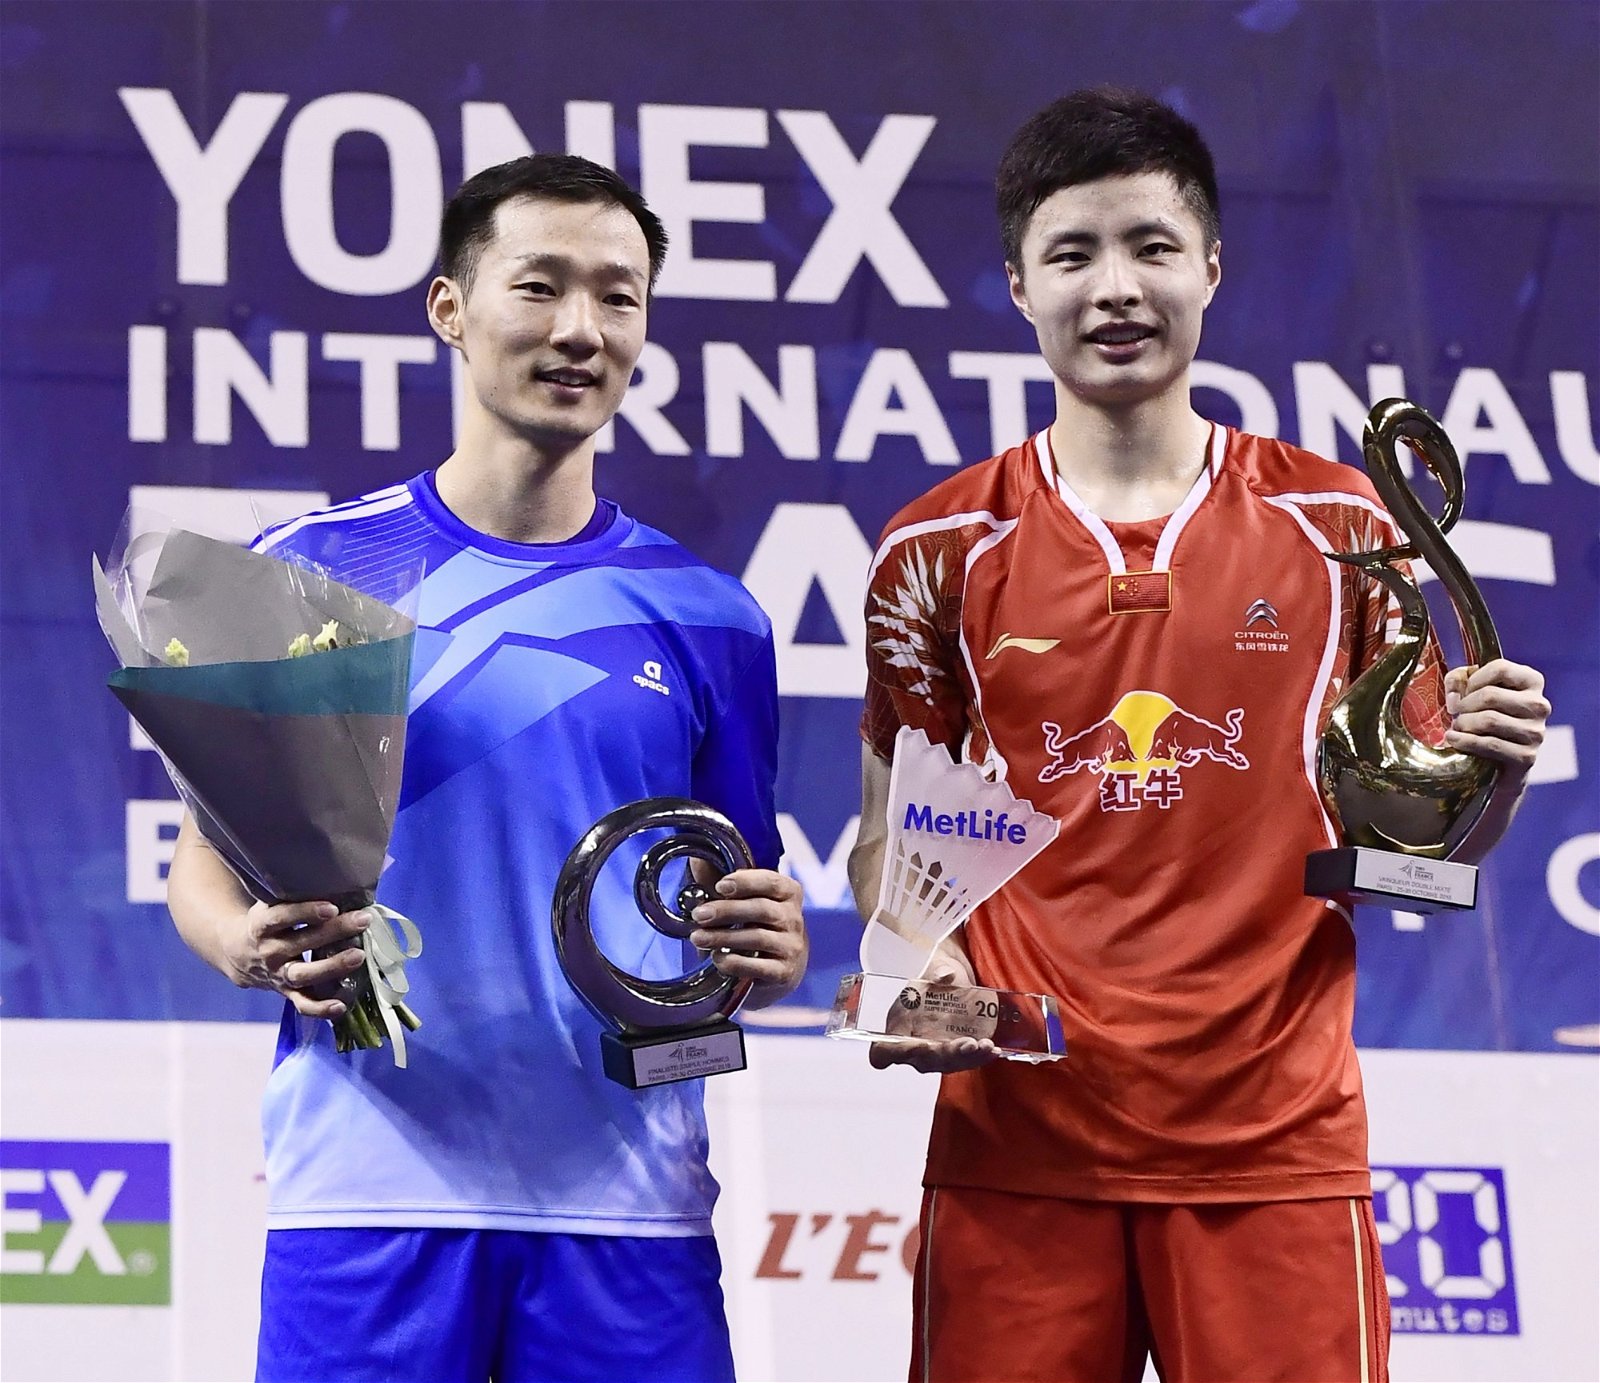 年仅20岁的中国新秀石宇奇（右），在男单决赛以直落两局21比16、21比19获胜，阻止韩国老将李炫一（36岁6个月又15天、左）刷新超系赛单打冠军的最年长纪录。